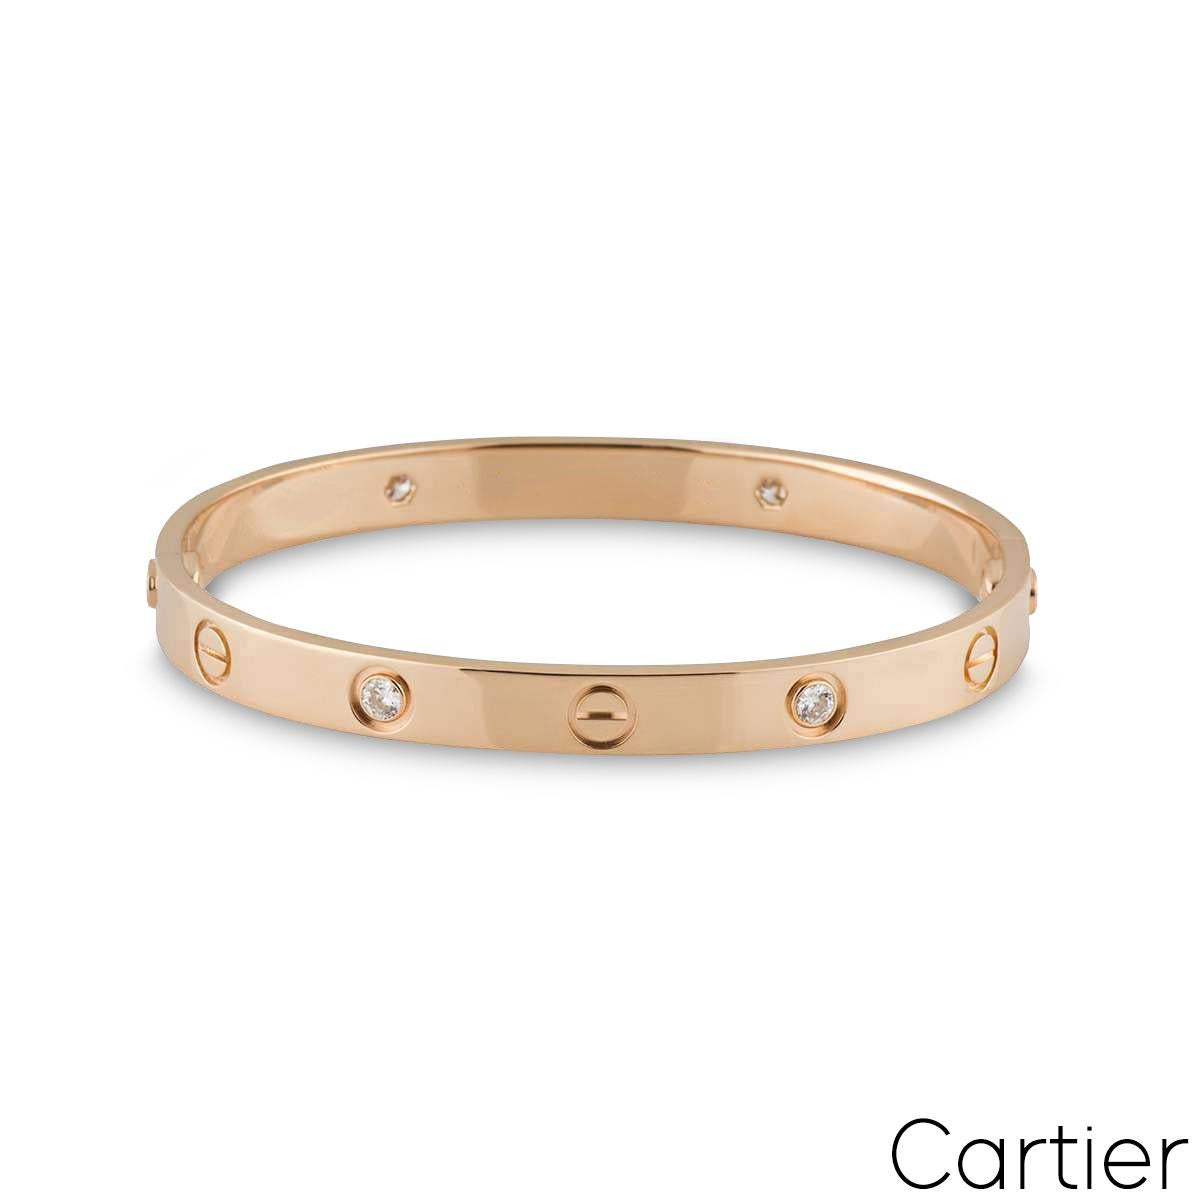 Un bracelet Cartier en or rose 18 carats et demi diamant de la collection Love. Le motif iconique de la vis alterne avec 4 diamants ronds de taille brillant sur le bord extérieur du bracelet, pour un total de 0,42ct. Le bracelet, de taille 17, est